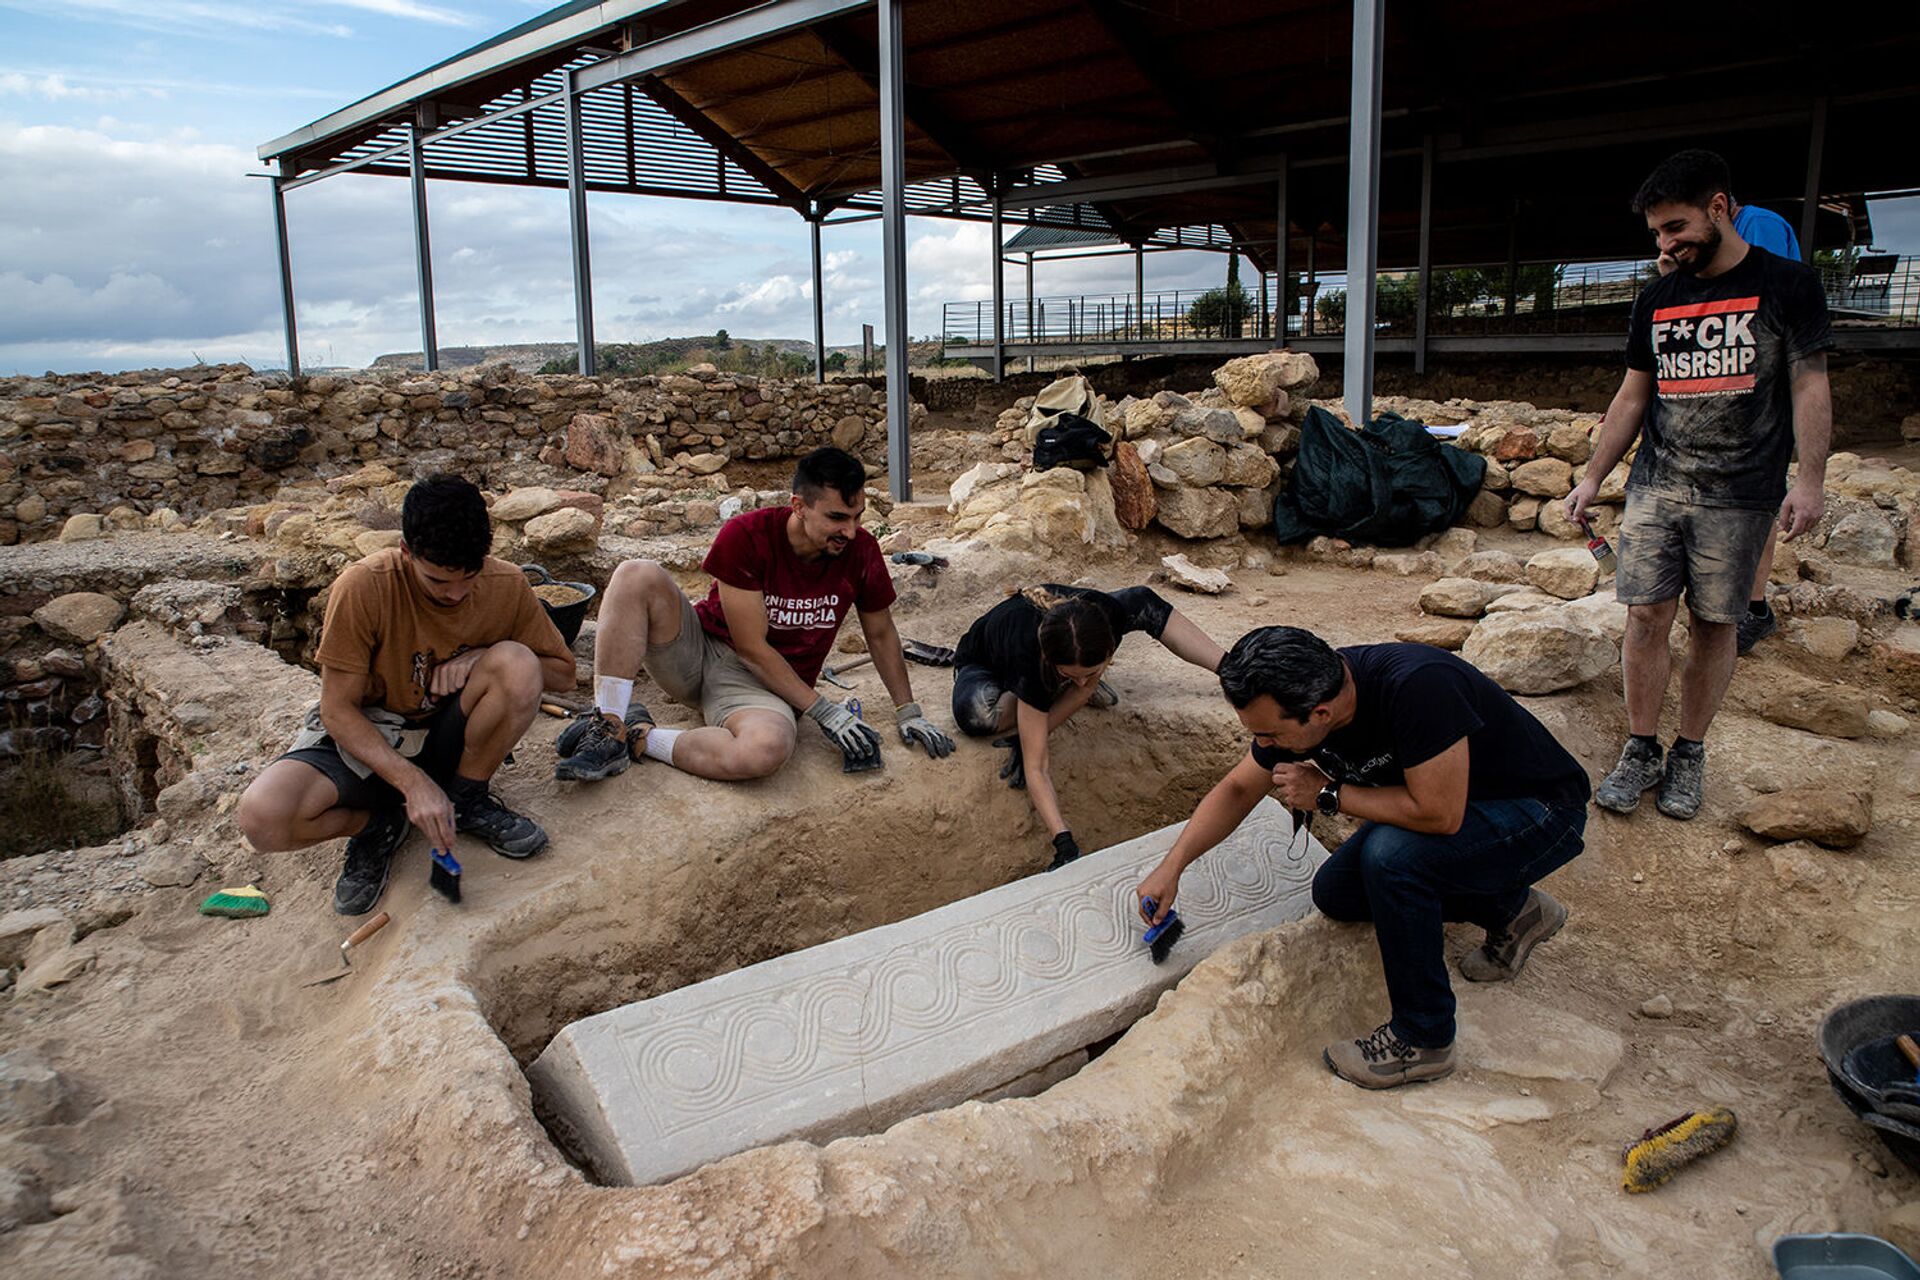 Descobrem na Espanha sarcófago de época dos visigodos com antigos símbolos sacros (FOTOS) - Sputnik Brasil, 1920, 23.07.2021